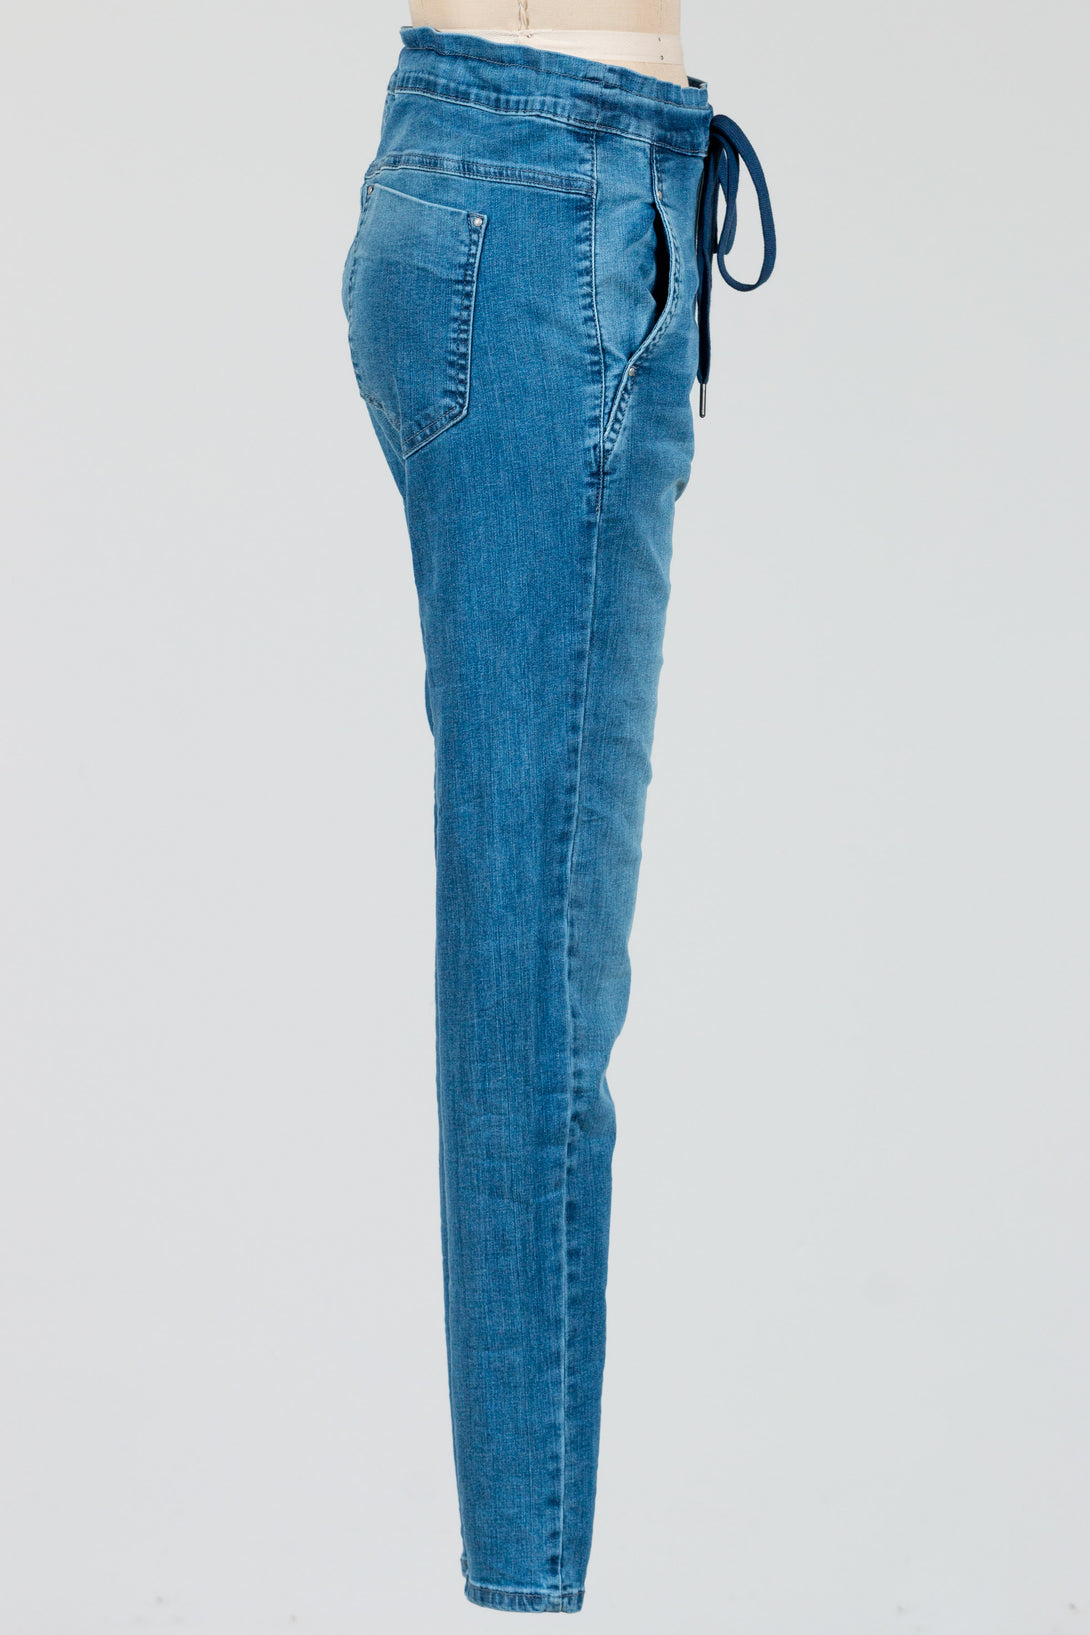 Alembika-Iconic-Jeans-CottonBlend-Denim